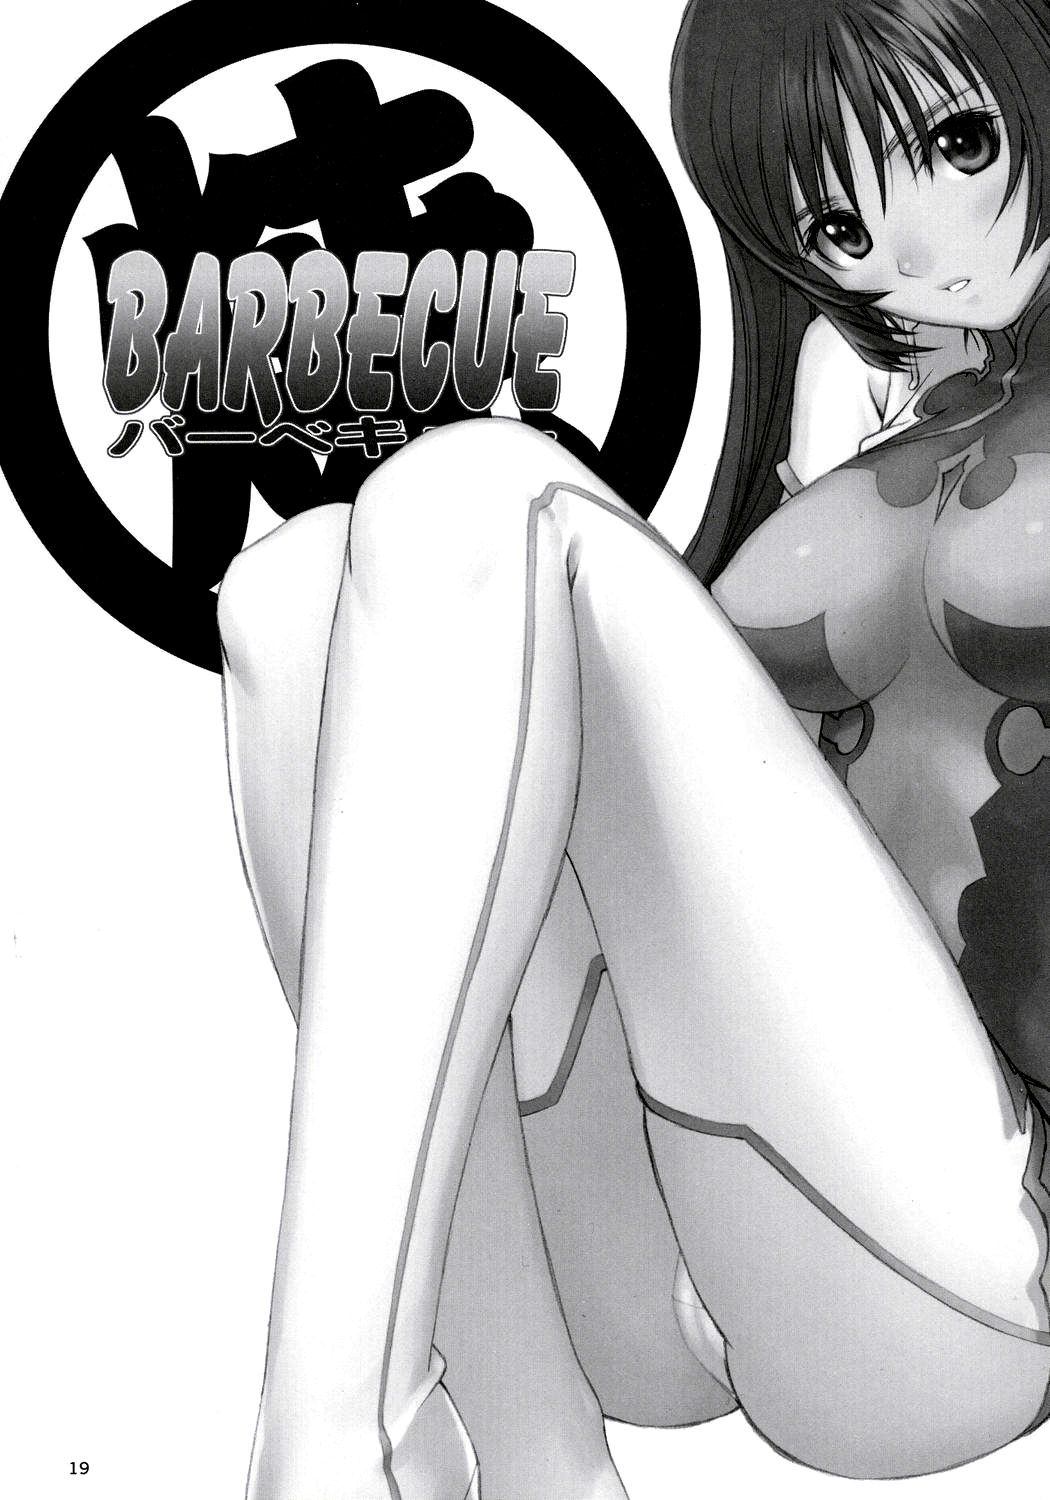 Maruyaki Barbeque zoids genesis 17 hentai manga